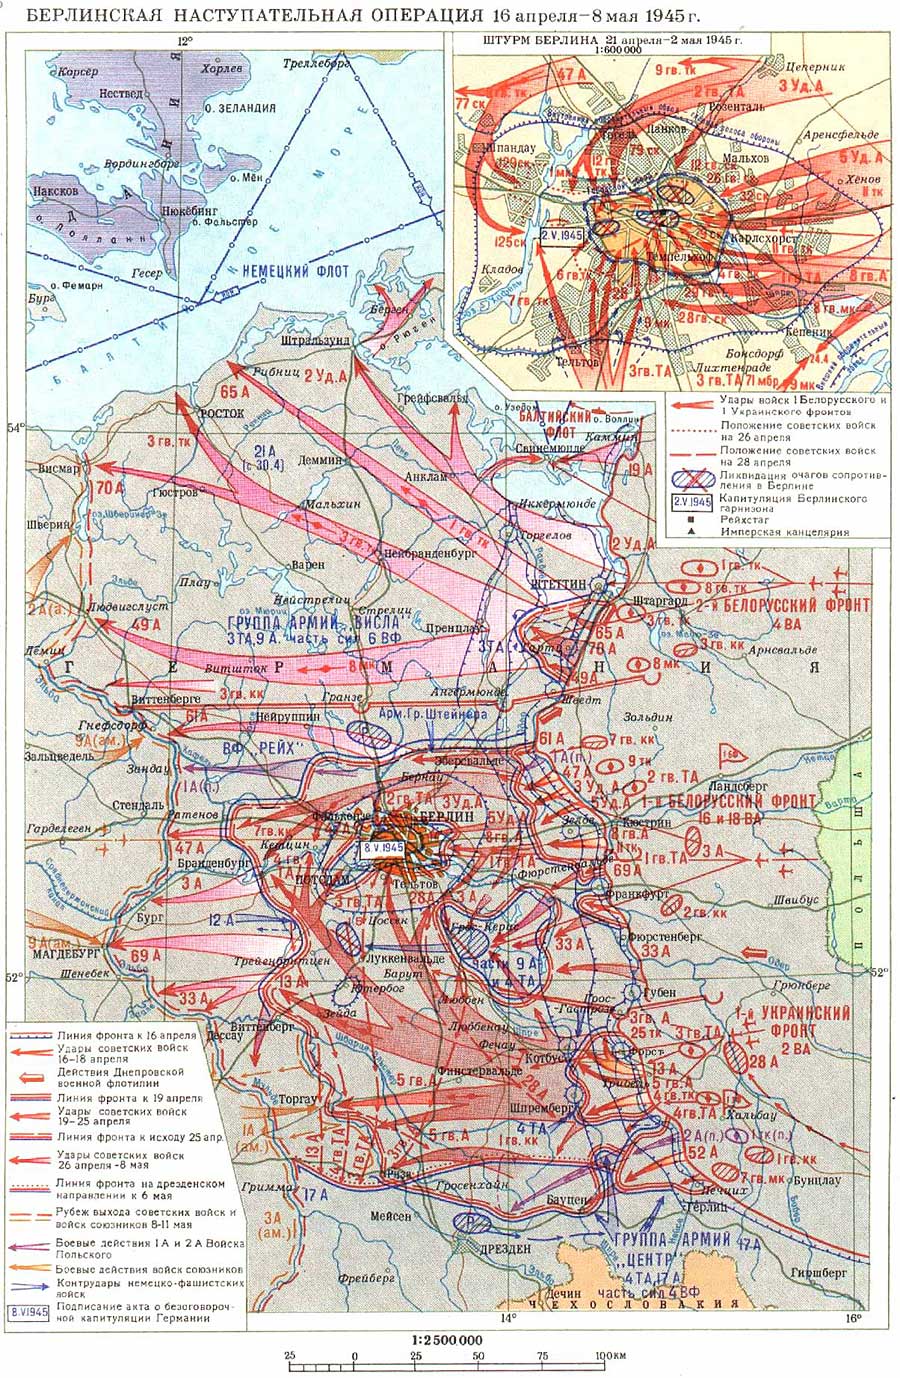 Битва за Берлин (16.04 - 08.05.1945)